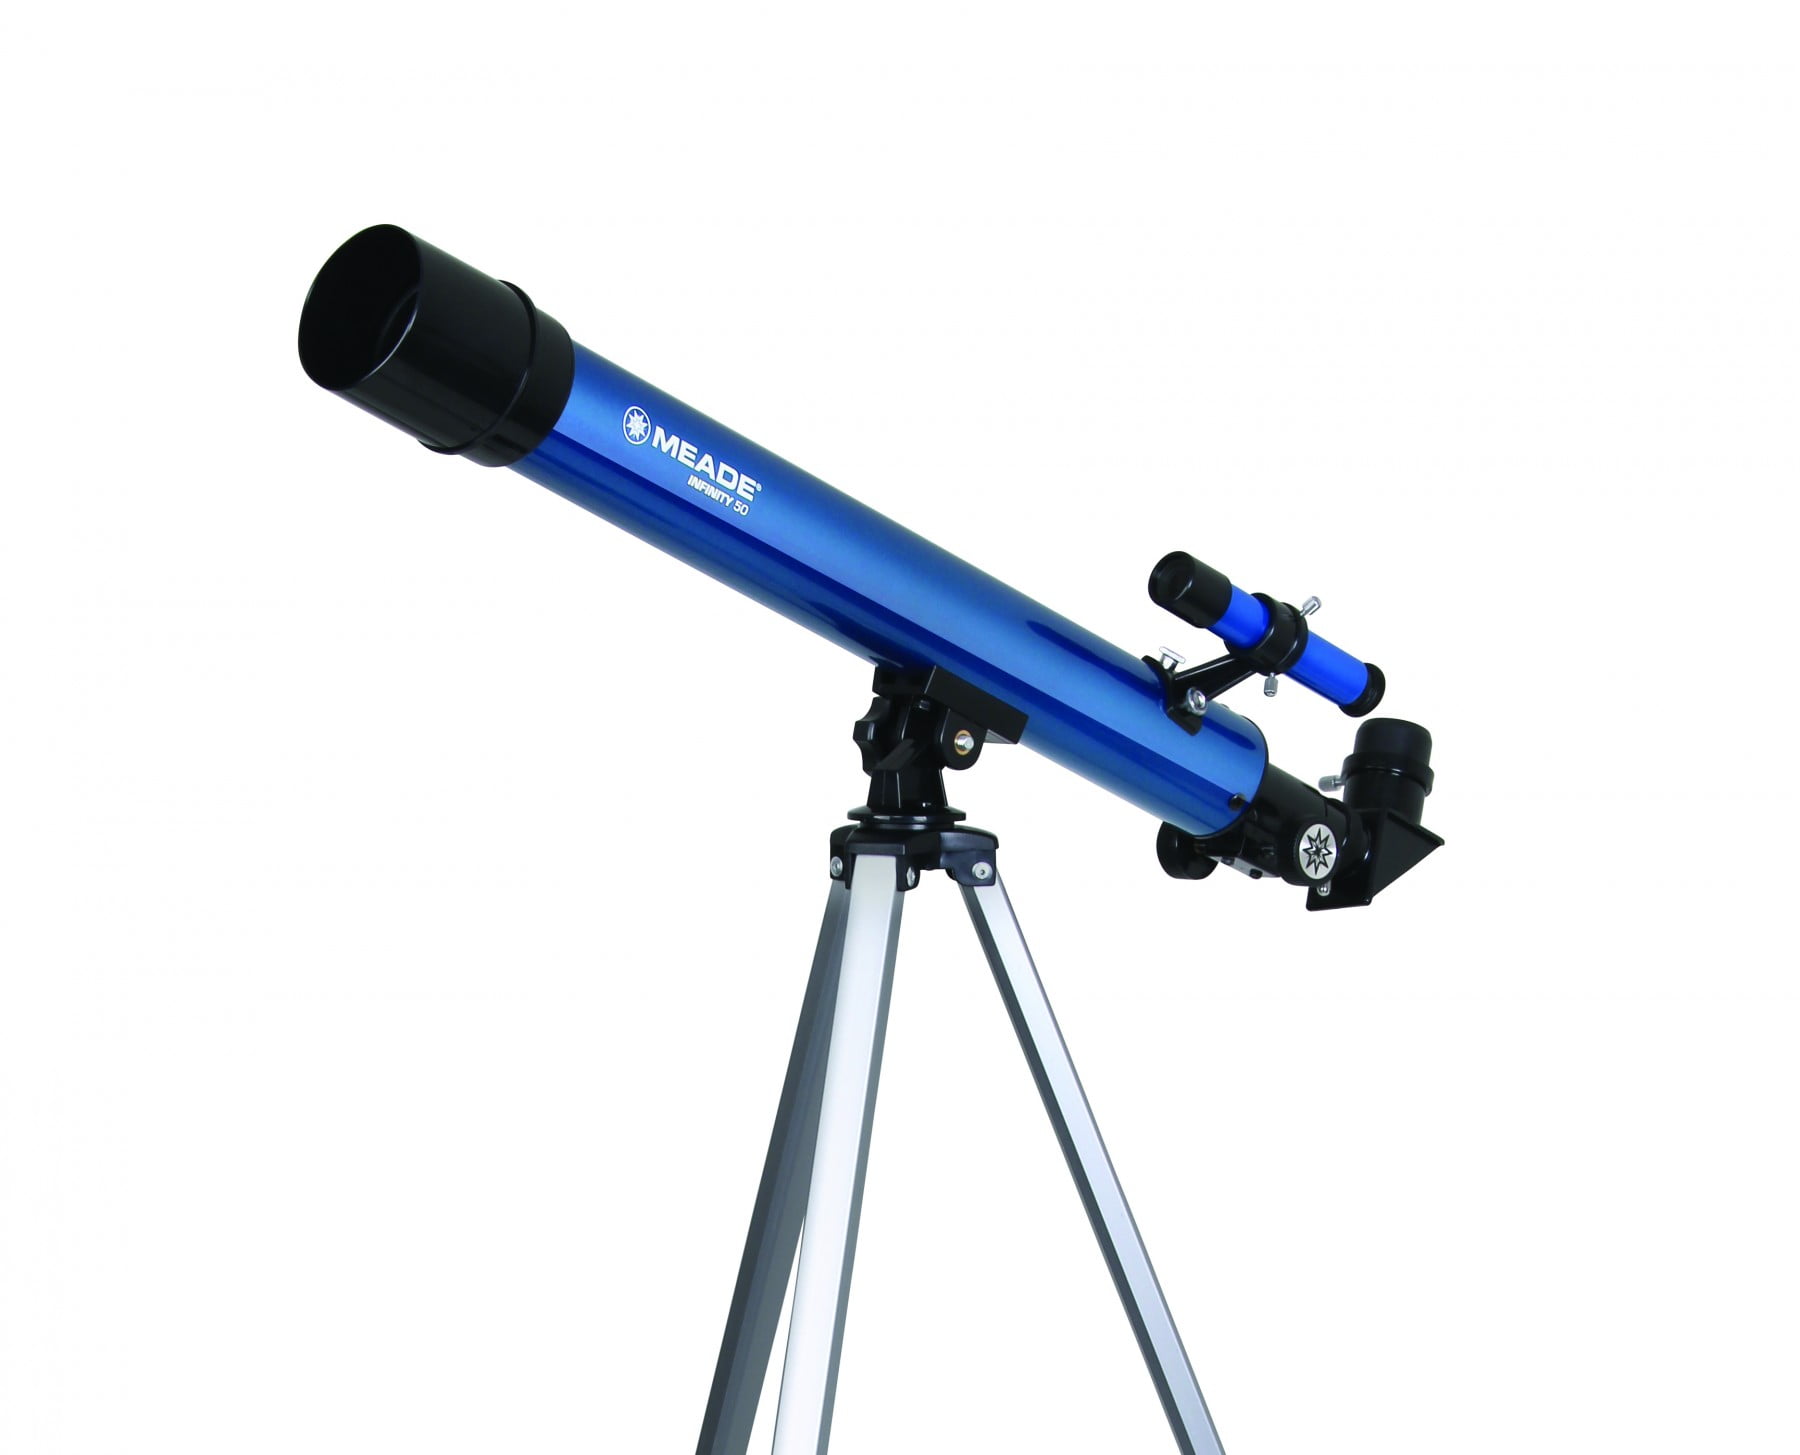 BARSKA 450 Power 50mm Length Starwatcher Refractor Telescope Pinion focuser